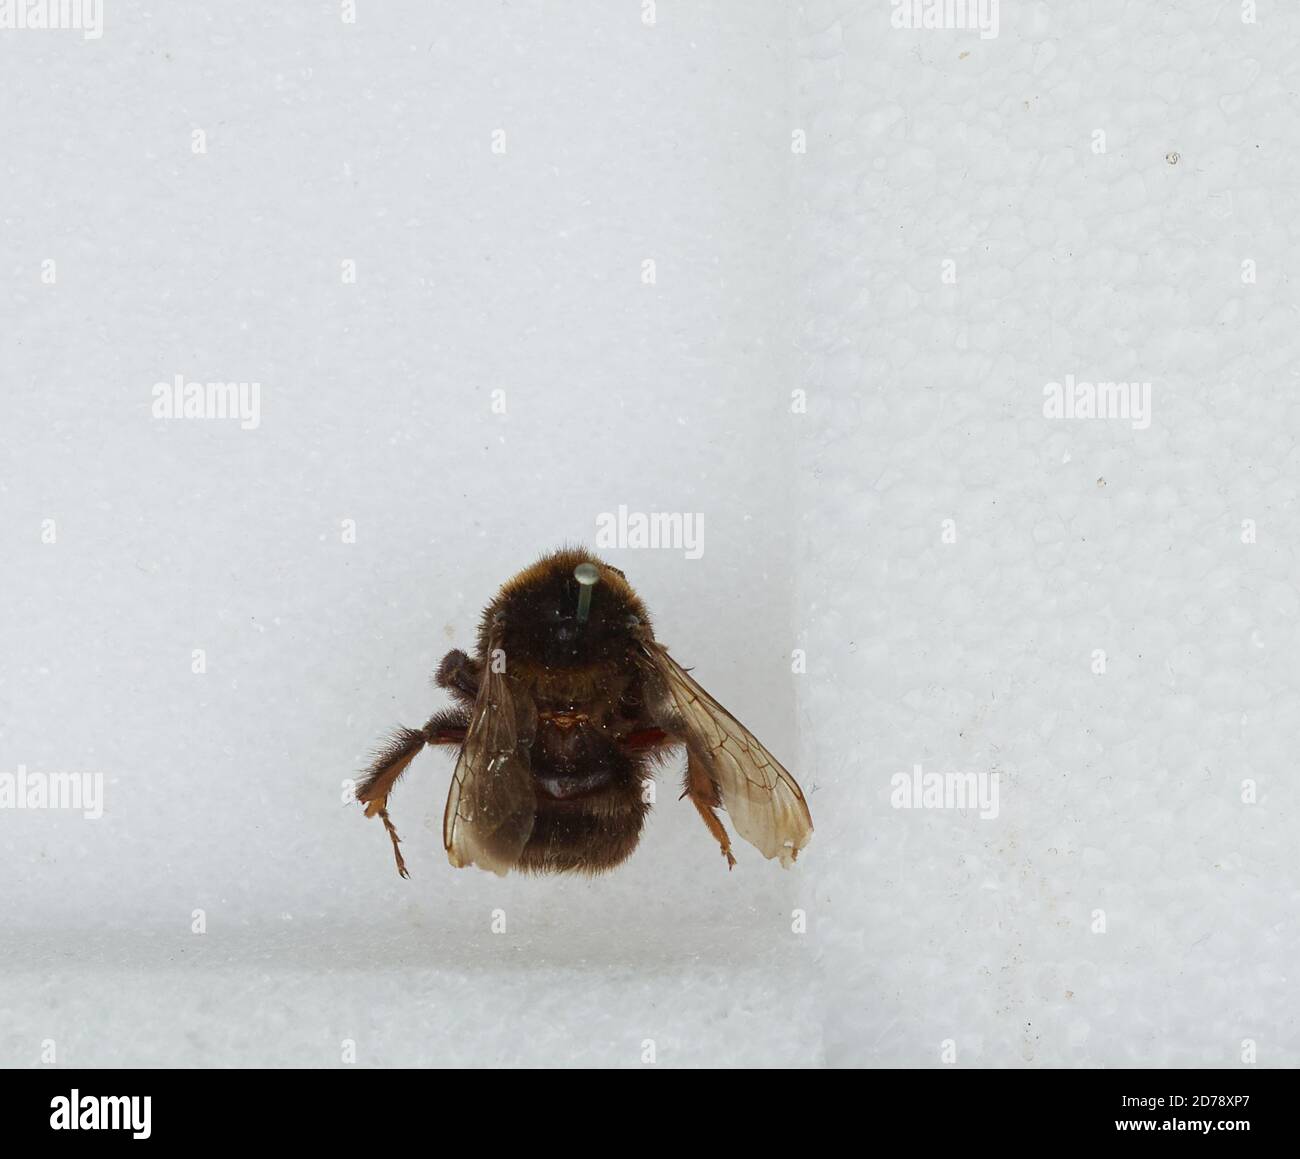 Bombus (Subterraneobombus) subterraneus (Linnaeus), Animalia, Arthropoda, Insecta, Hymenoptera, Apidae, Apinae Stock Photo